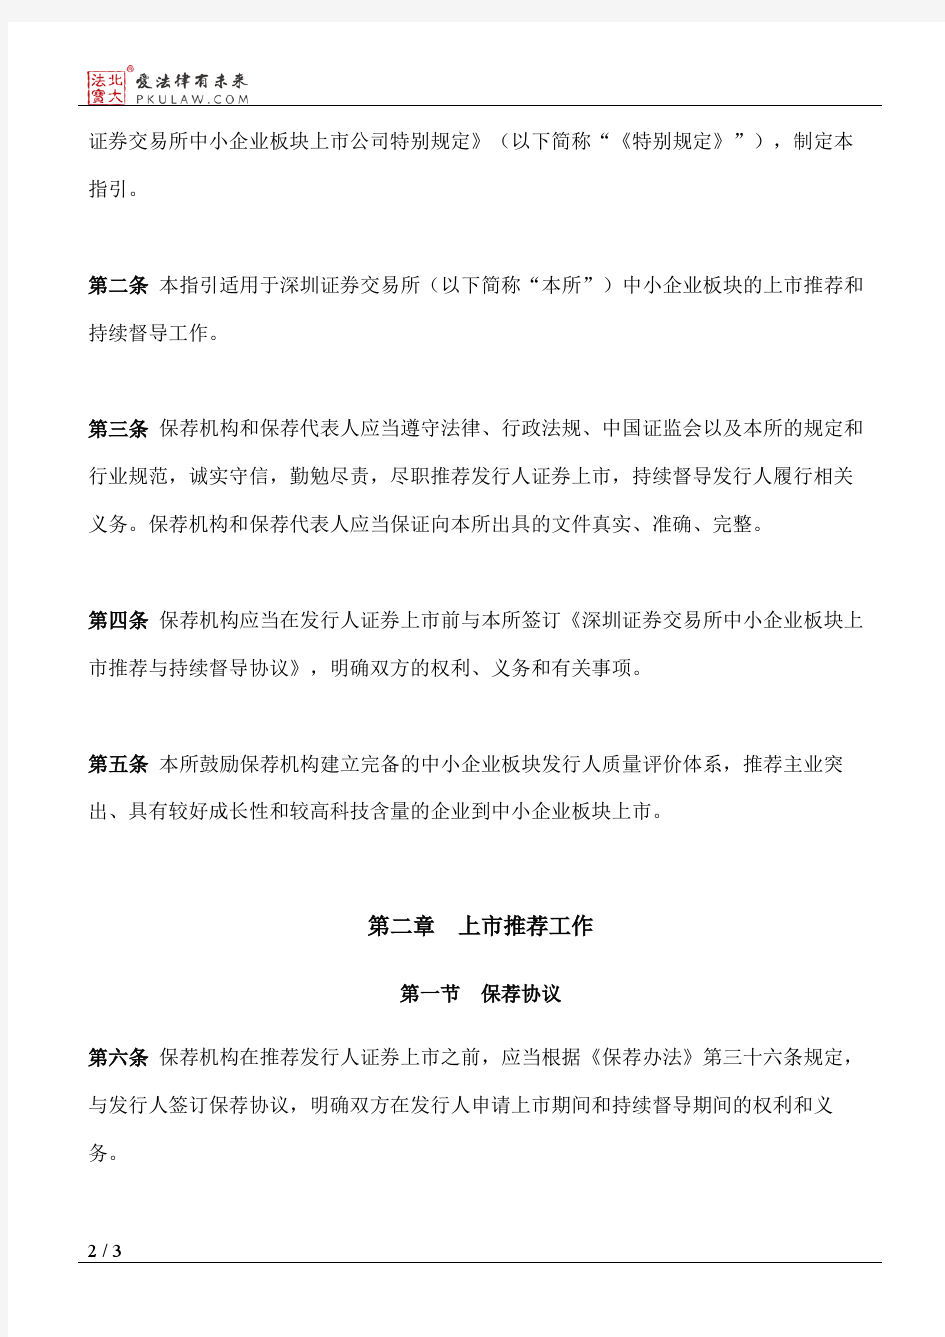 深圳证券交易所中小企业板块保荐工作指引